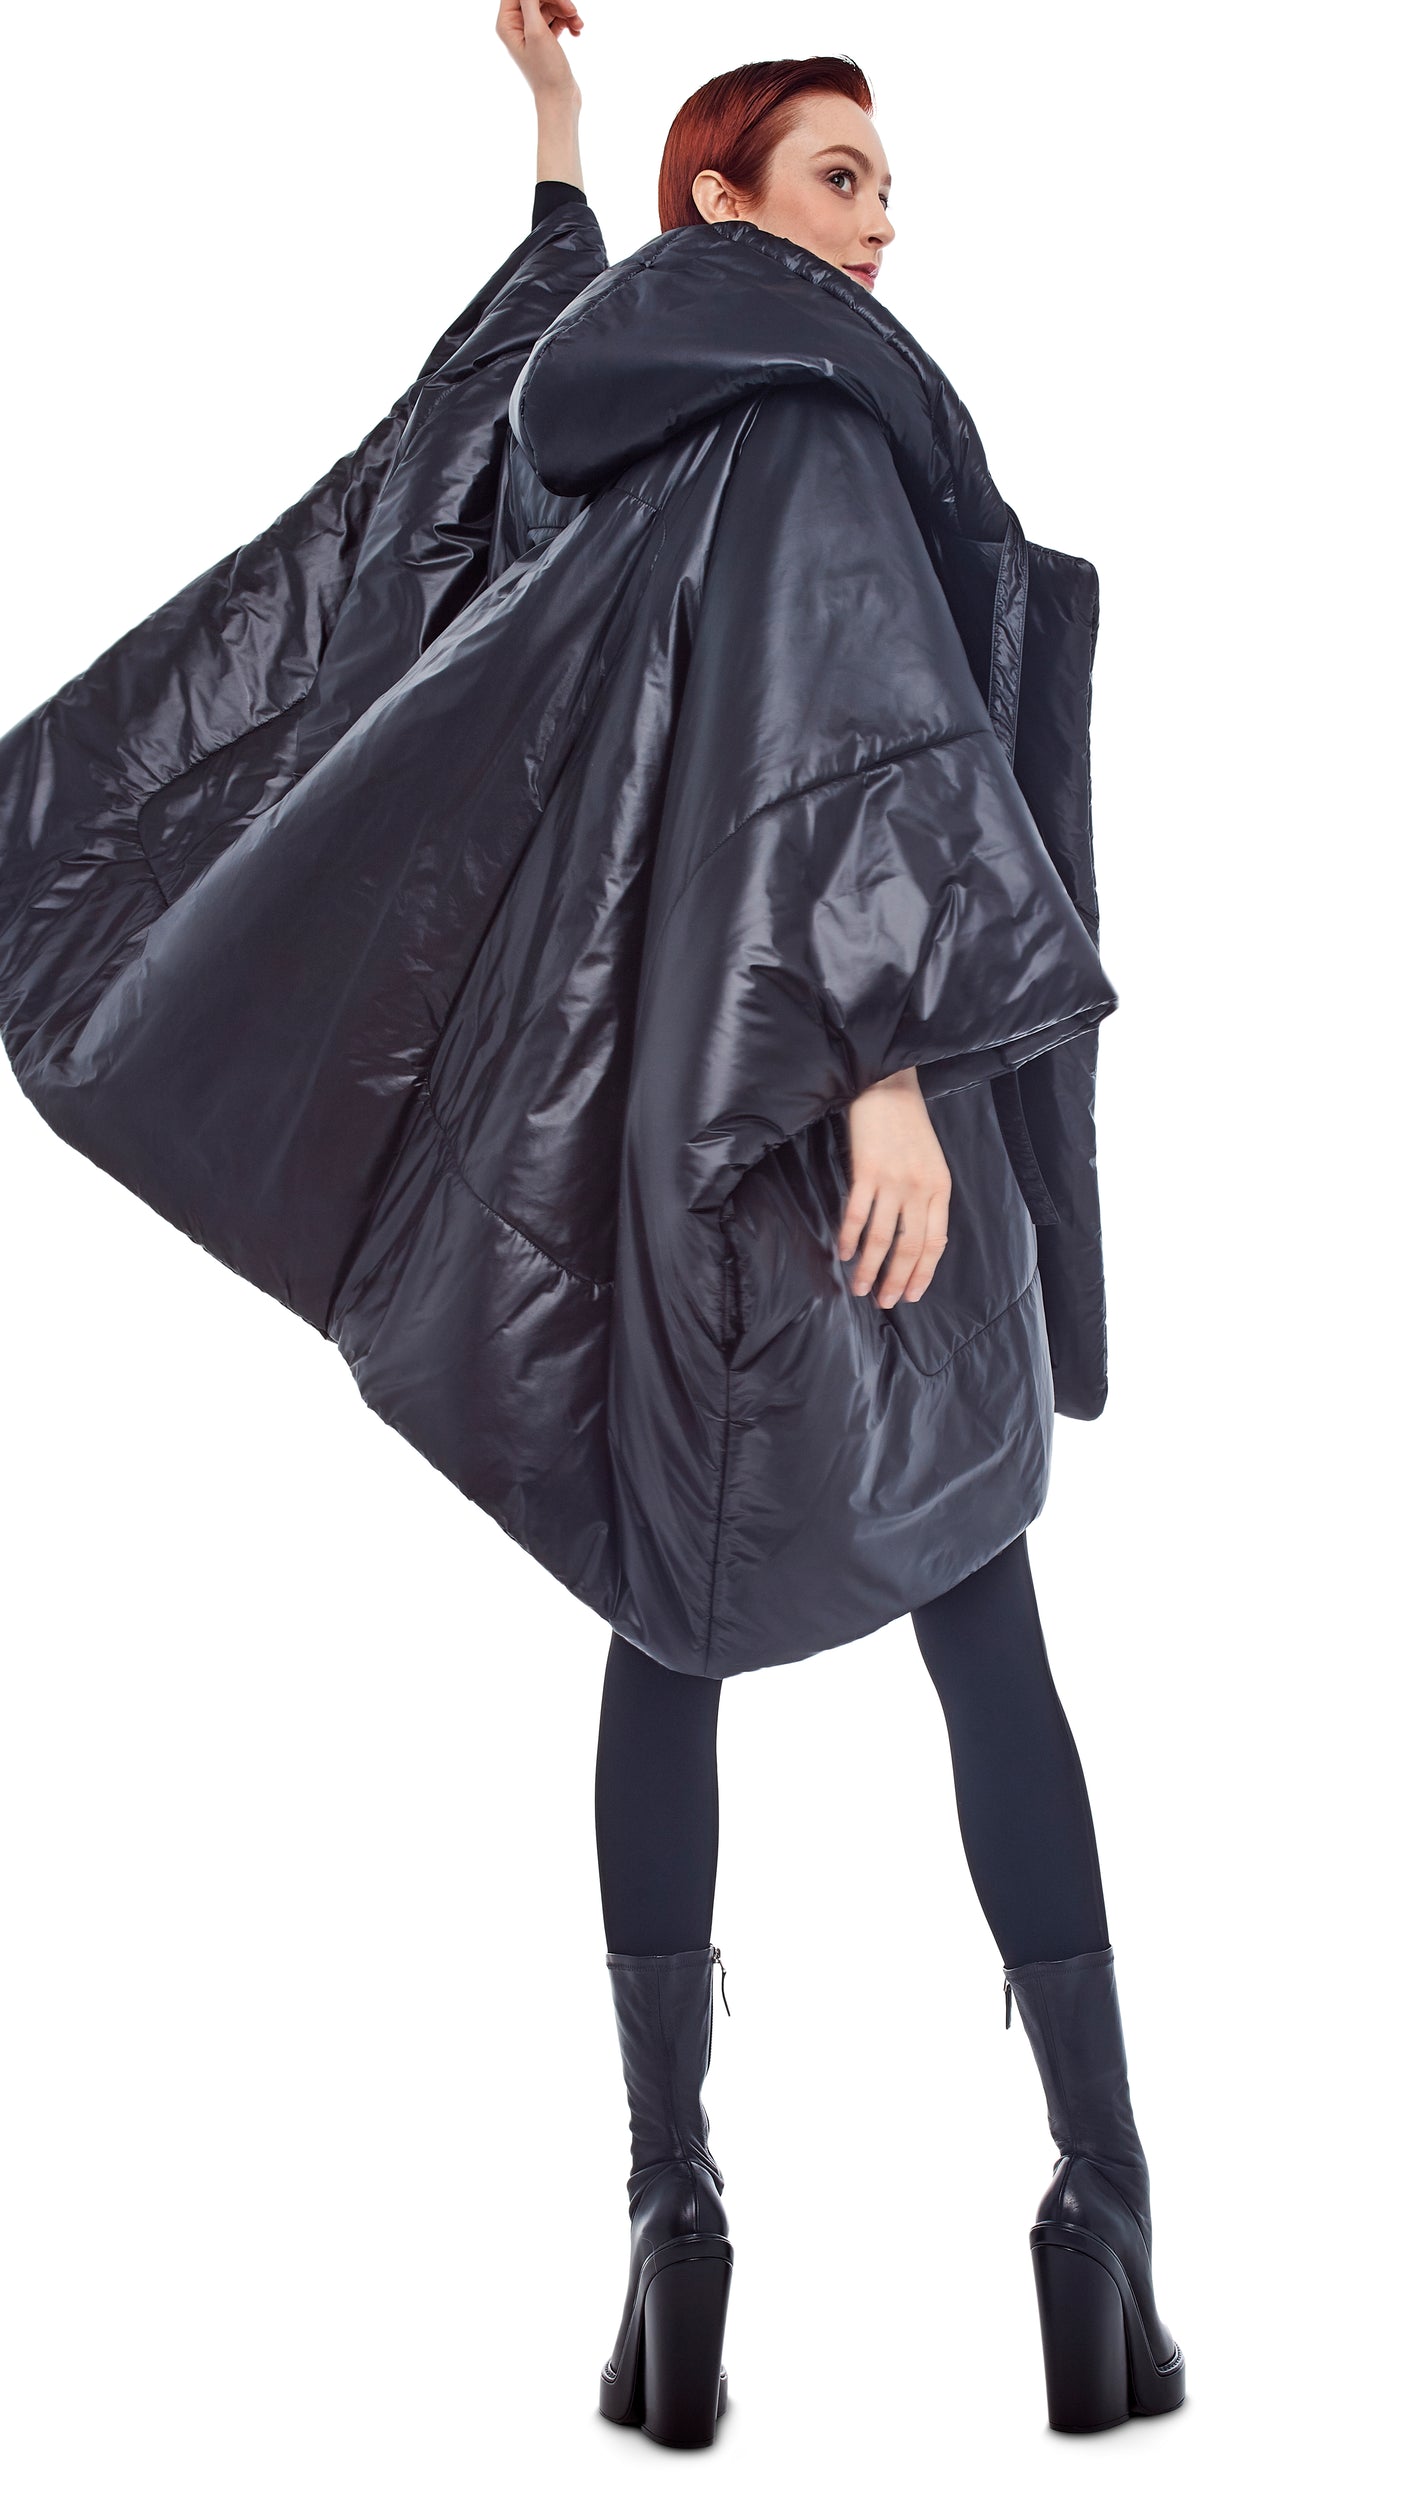 sleeping bag coat